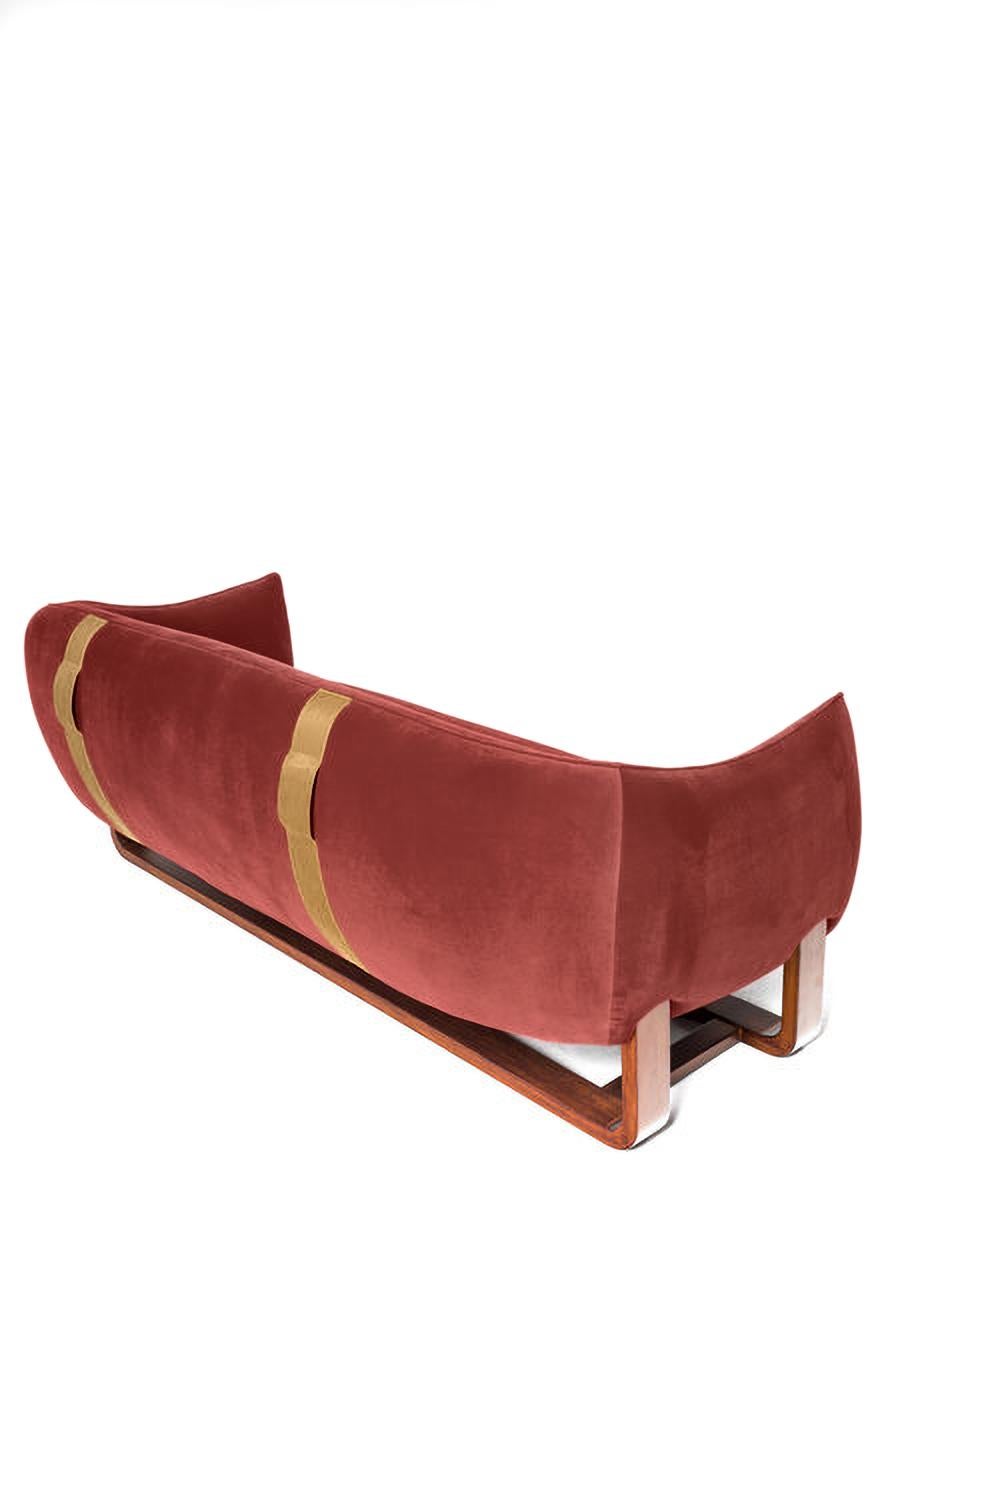 La designer Marie Burgos a développé le concept de sa célèbre chaise longue Milo et a créé le nouveau canapé Milo. Elle utilise un cadre en bois moulé pour soutenir les sièges luxueusement confortables qui sont recouverts d'un large choix de tissus,